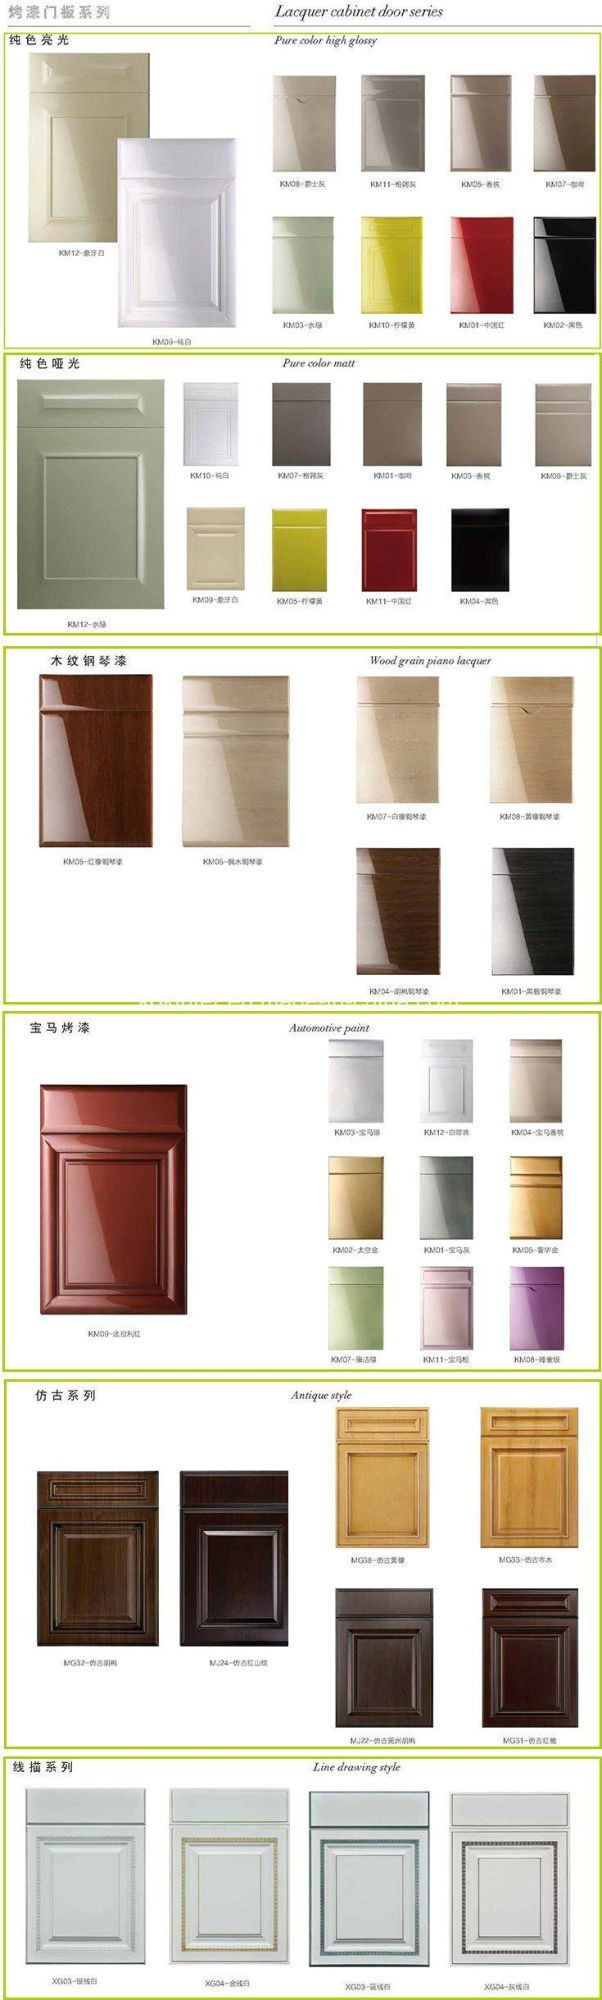 European Style Kitchen Cabinet Kitchen Furniture Bathroom Furniture Wall Cabinet/Base Cabinet